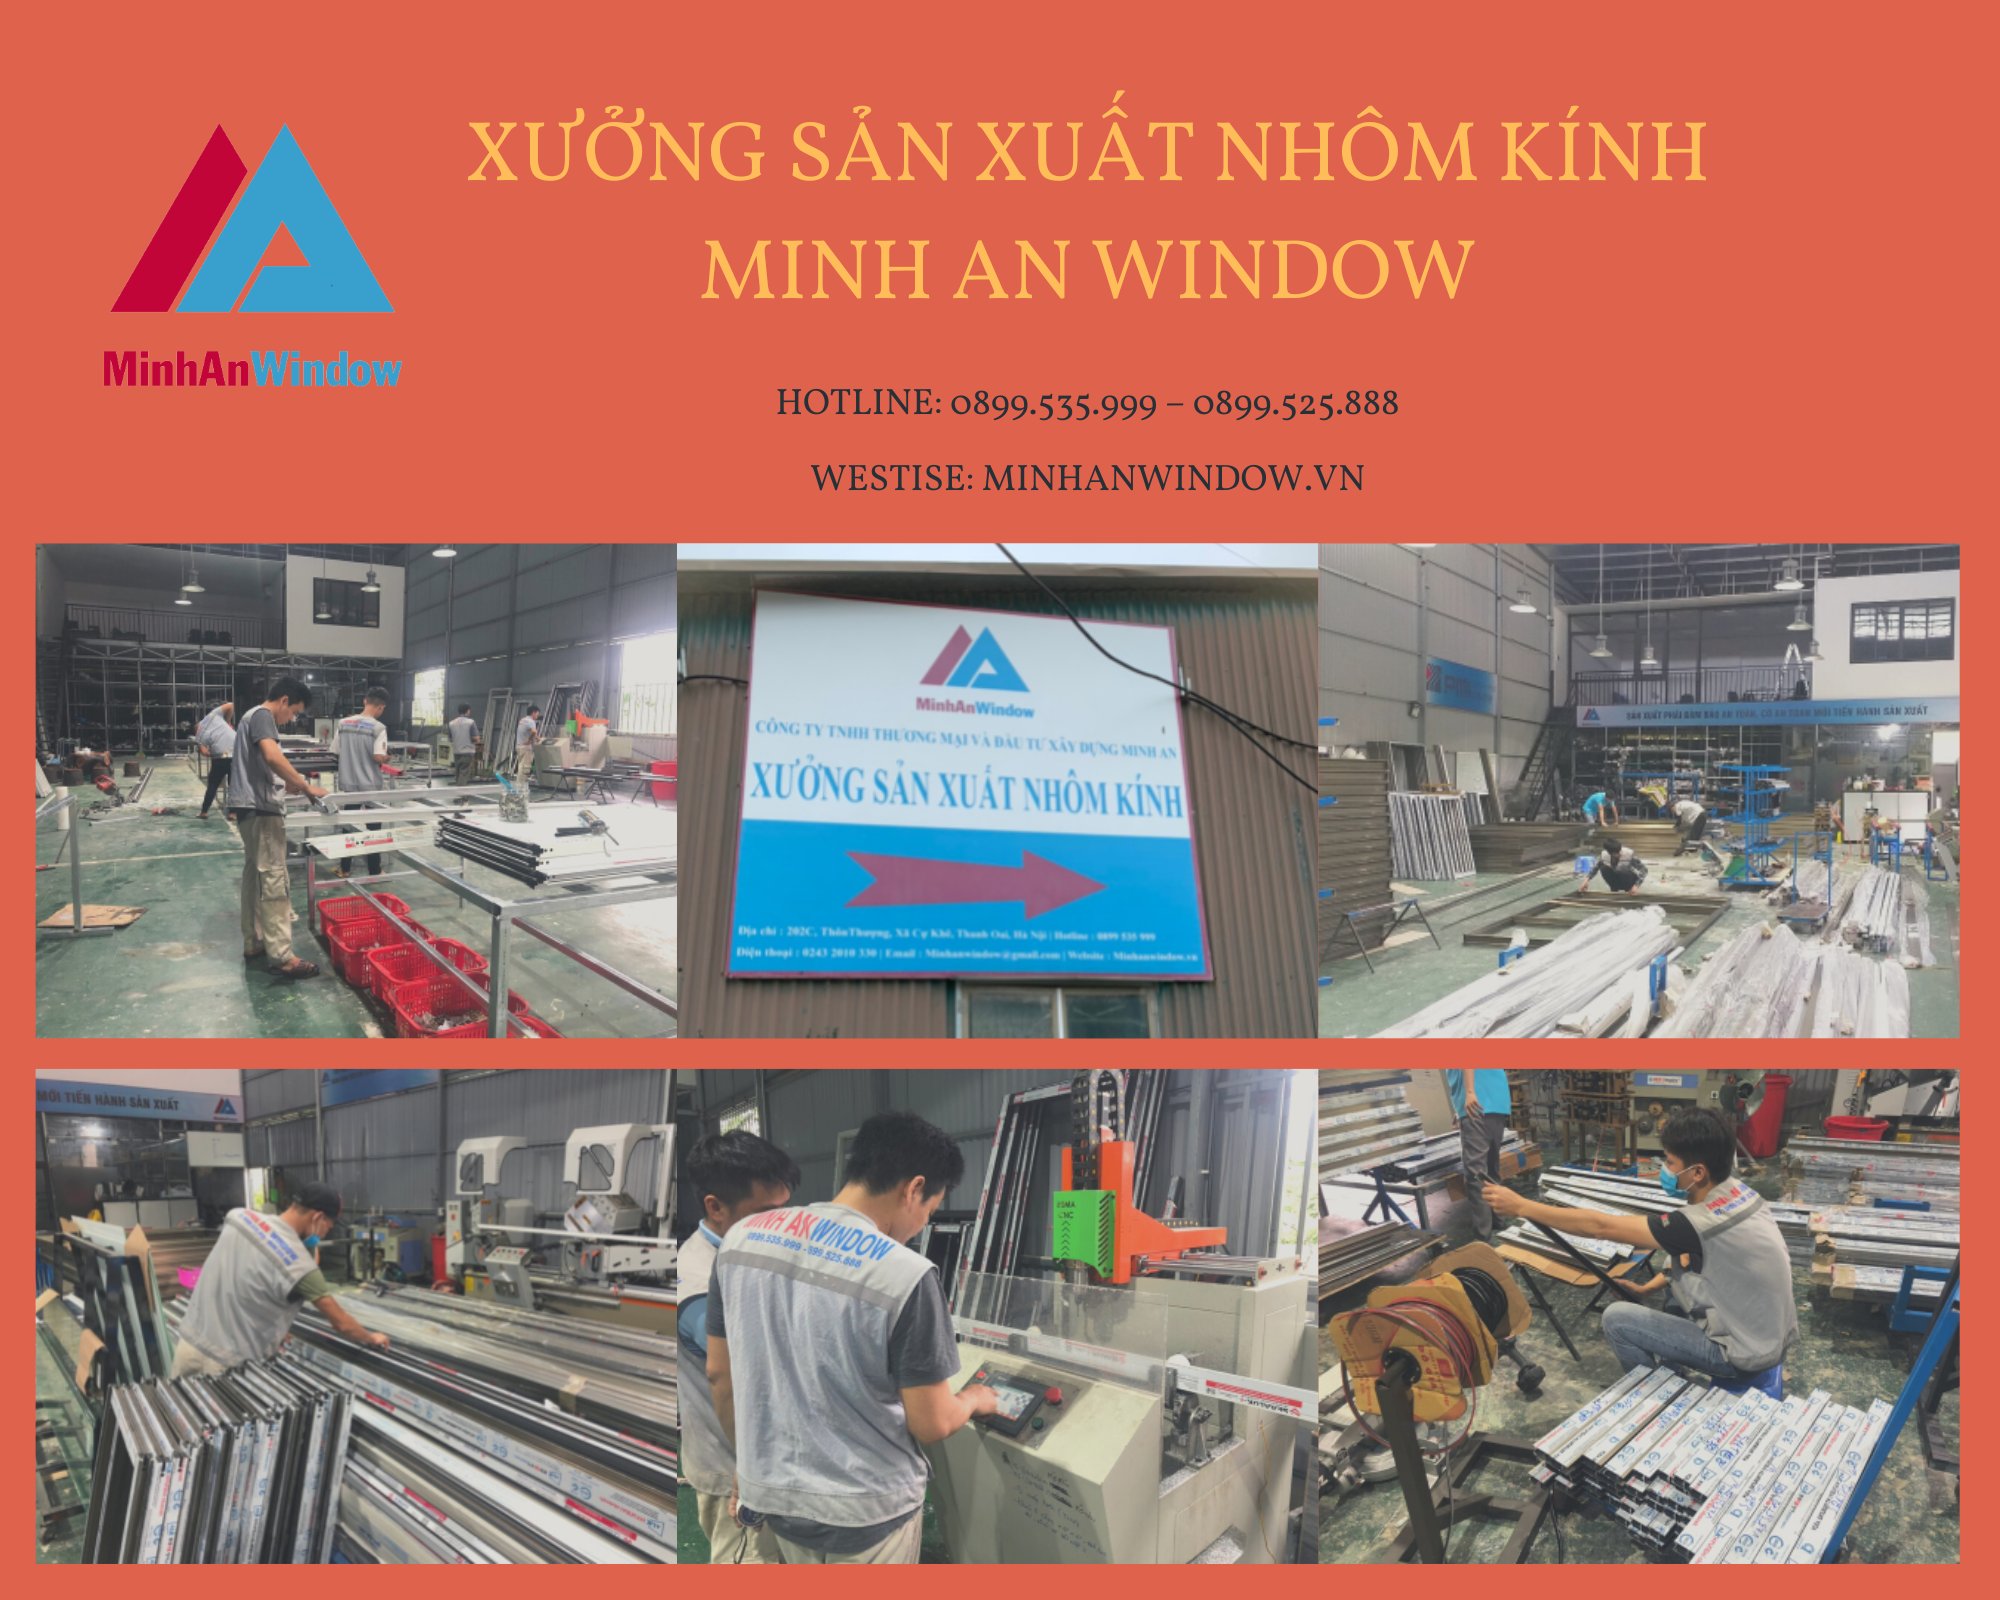 Xưởng sản xuất Minh An Window